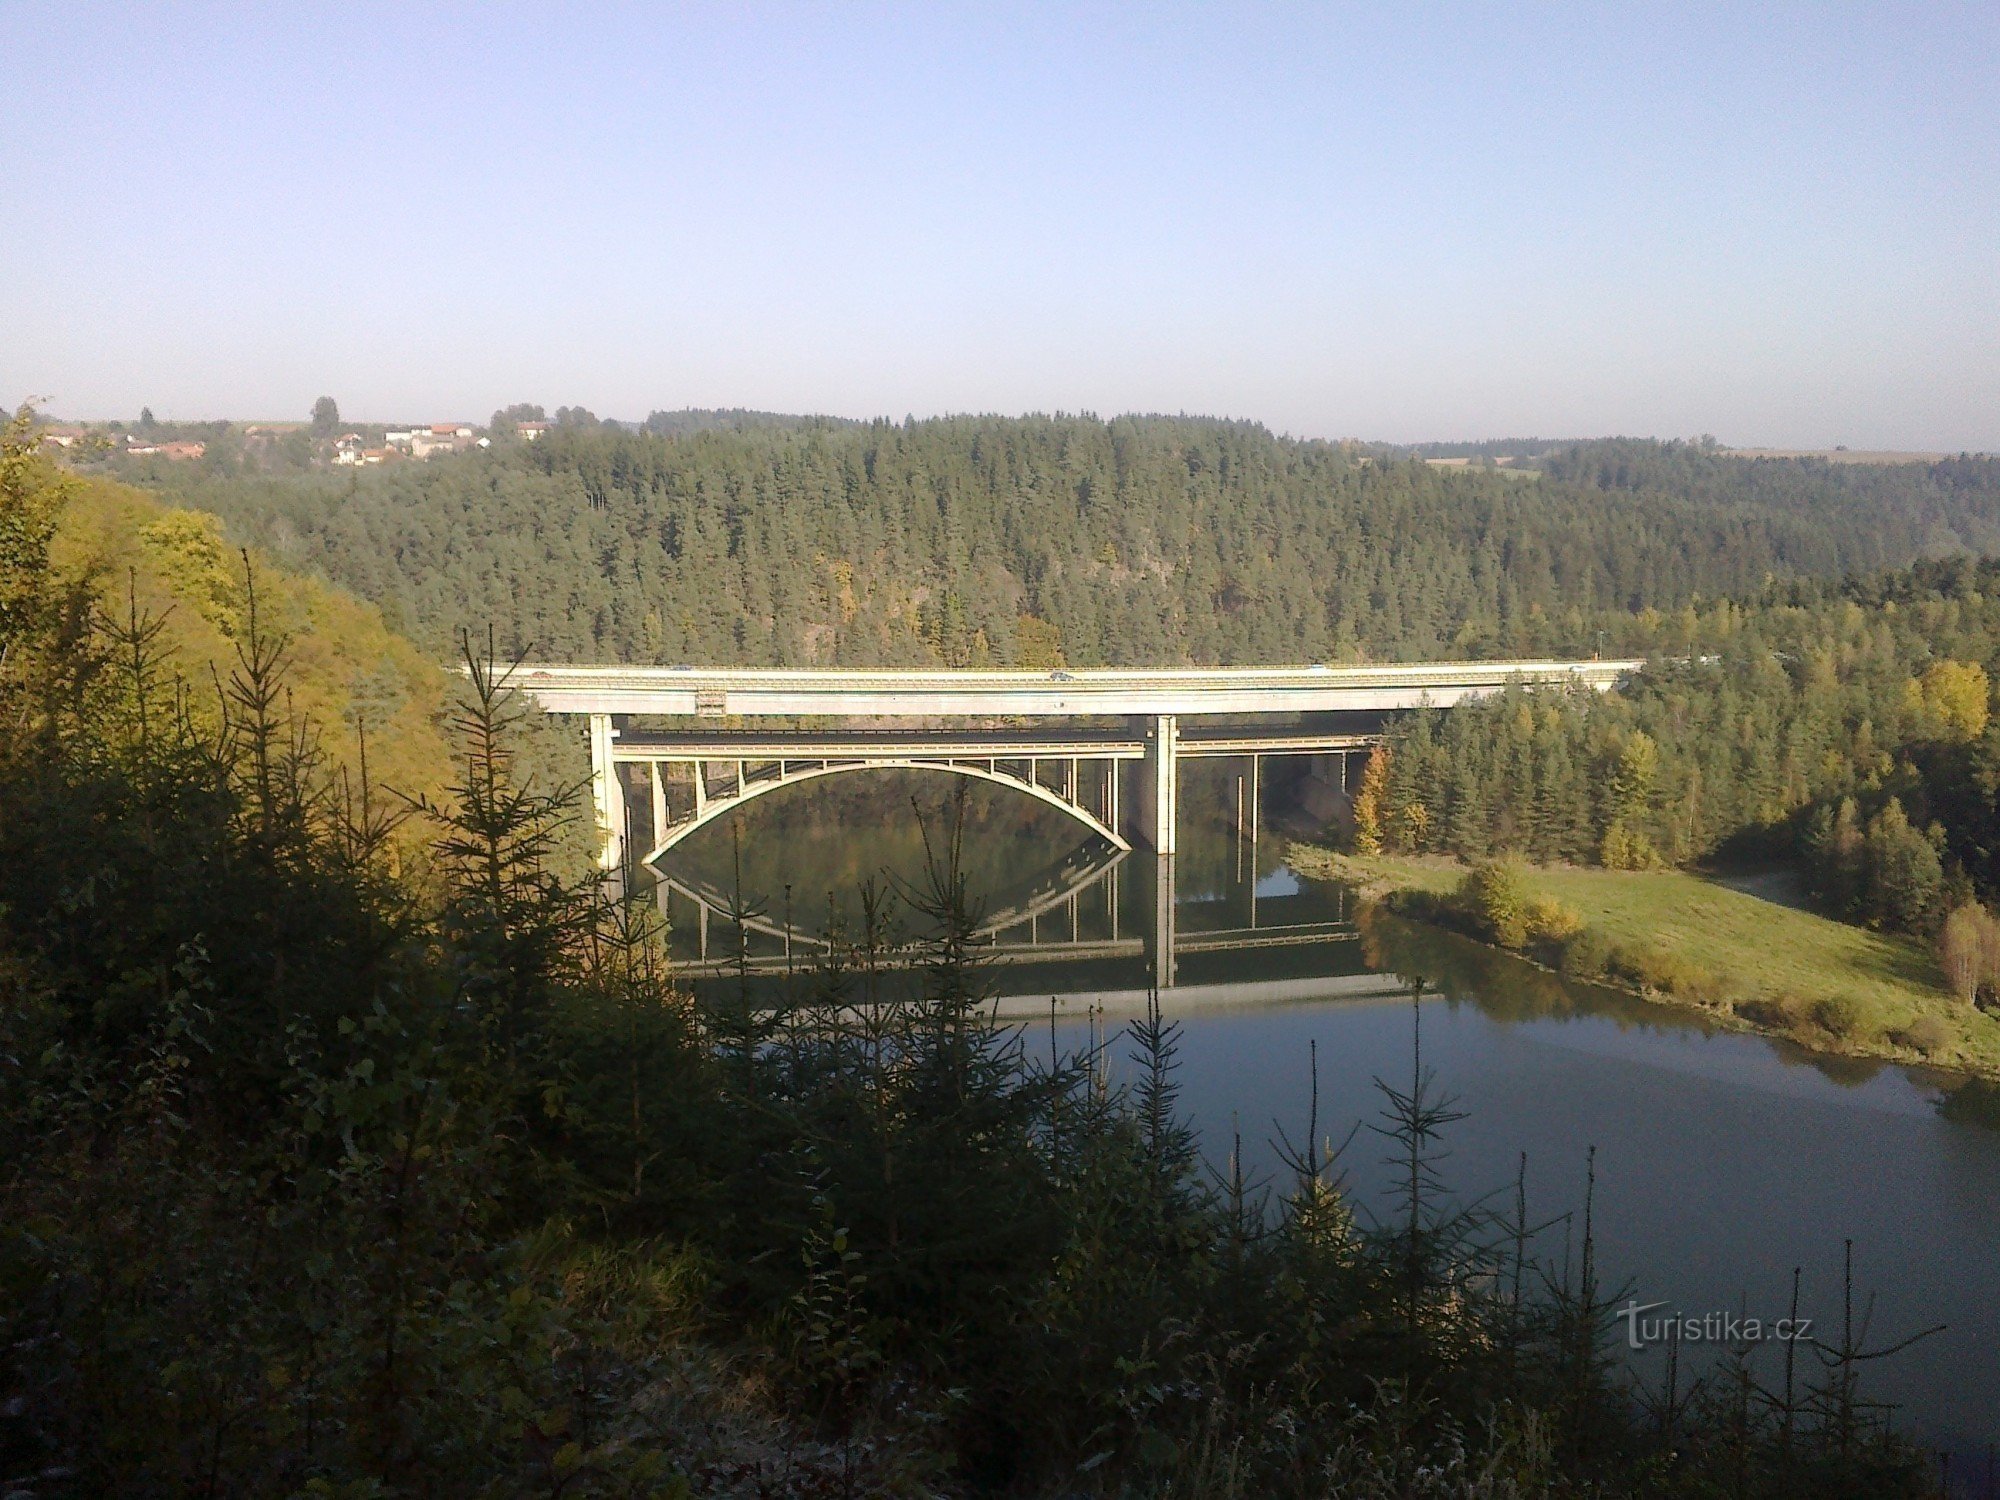 Double pont près de Píště.